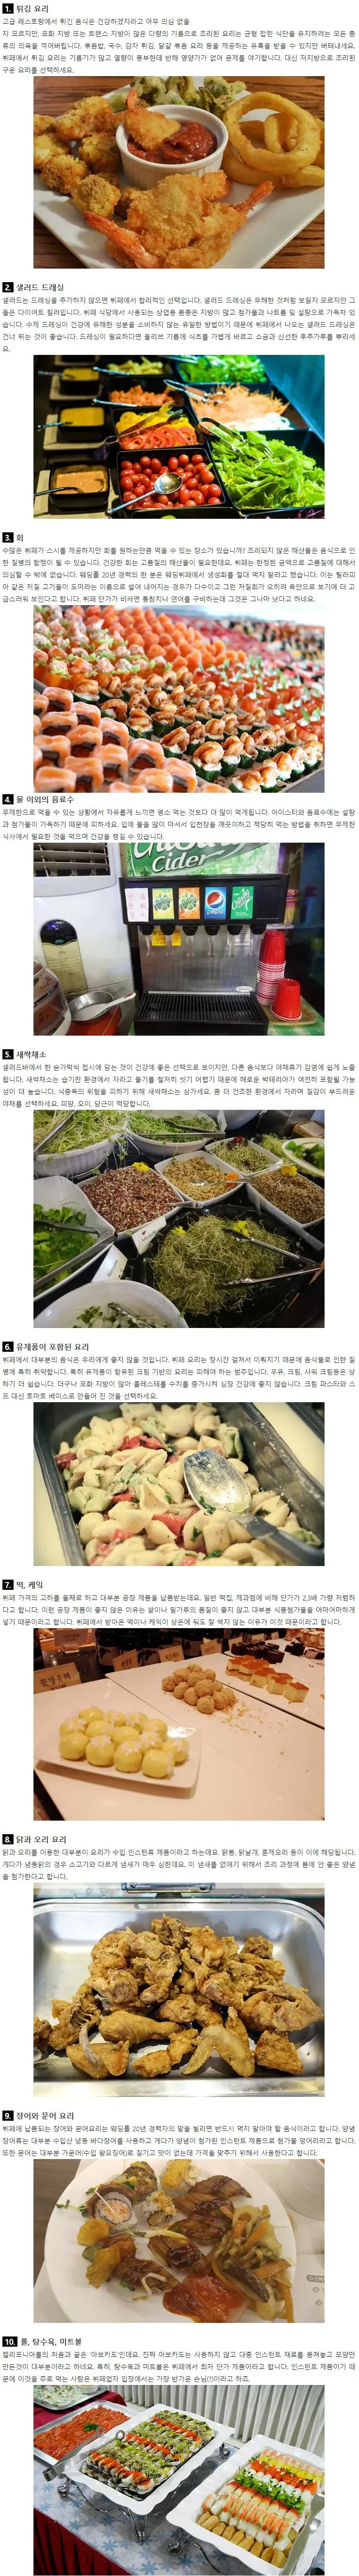 뷔페에서 절대 먹으면 안 되는 음식 10가지.png | mbong.kr 엠봉